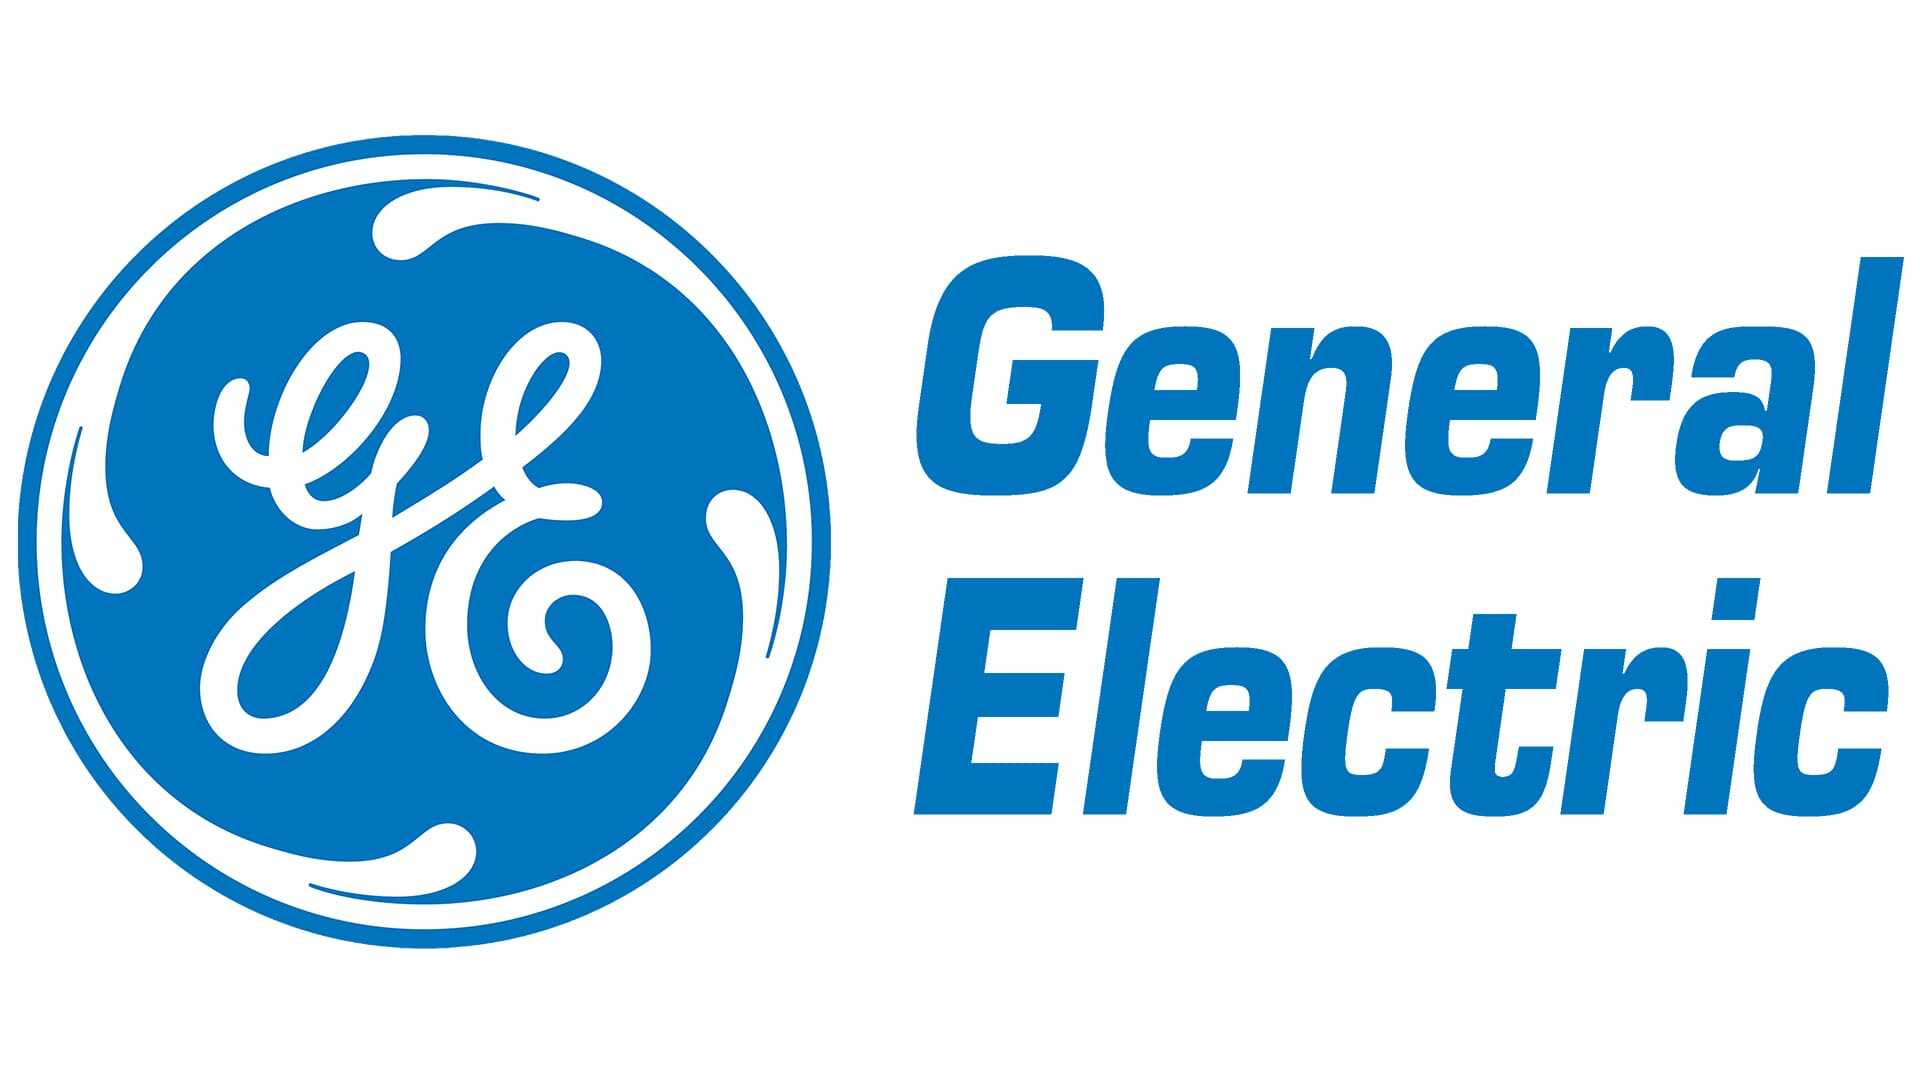 .  General Electric (GE), un géant de l'industrie manufacturière, a créé une communauté en ligne où les clients et les partenaires peuvent partager leurs idées, collaborer sur des projets et accéder à des ressources techniques. Cette approche a permis à GE d'augmenter de 30% l'adoption de ses nouvelles solutions 